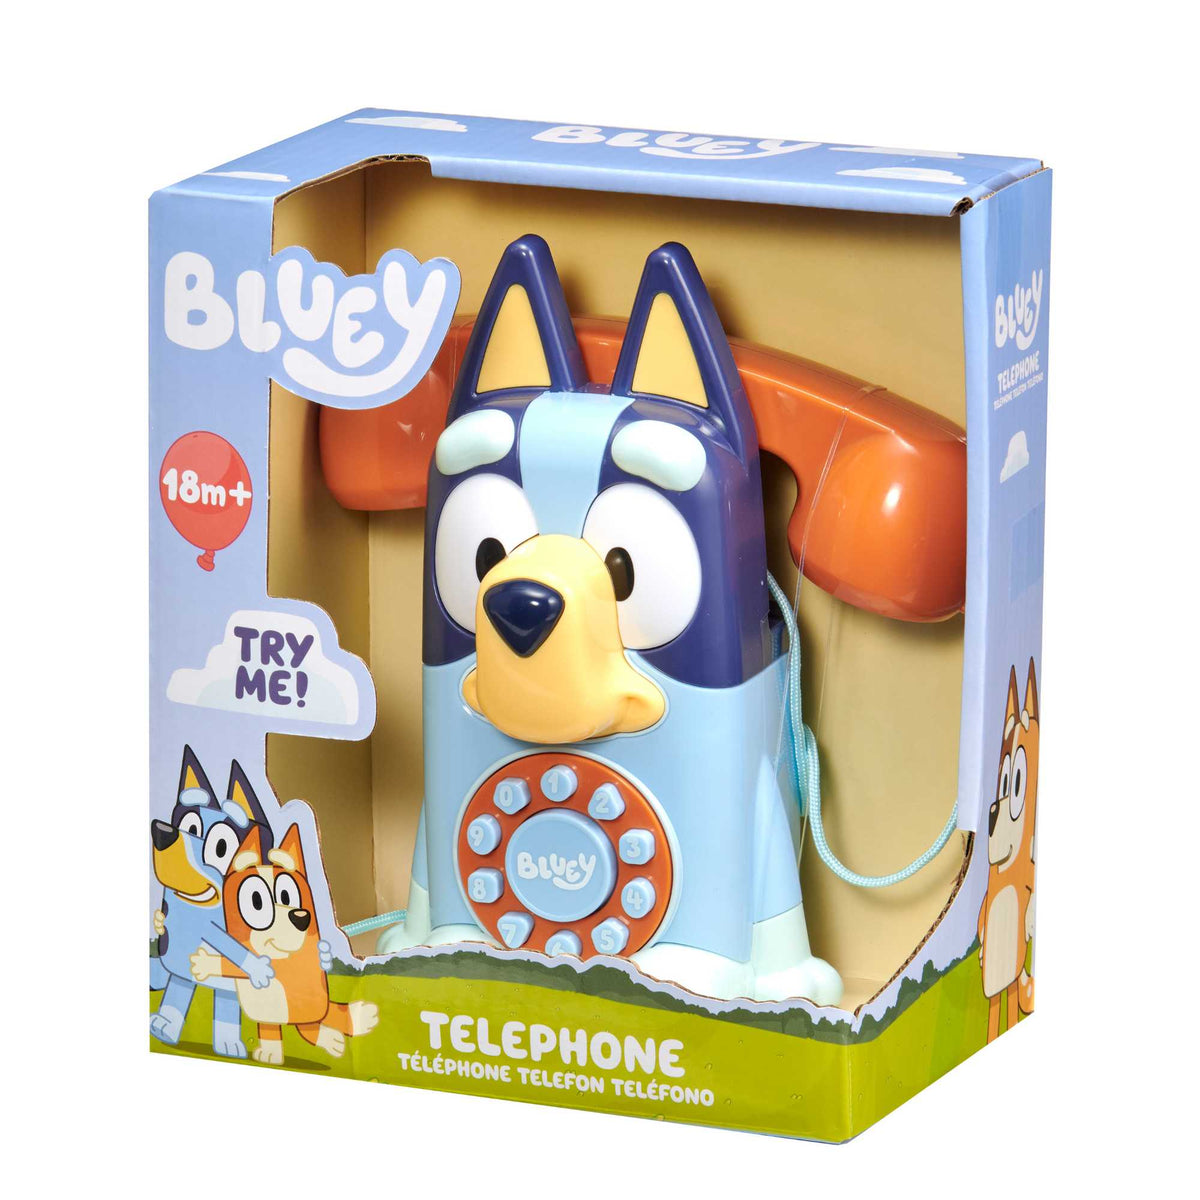 Bluey Interactive Telephone